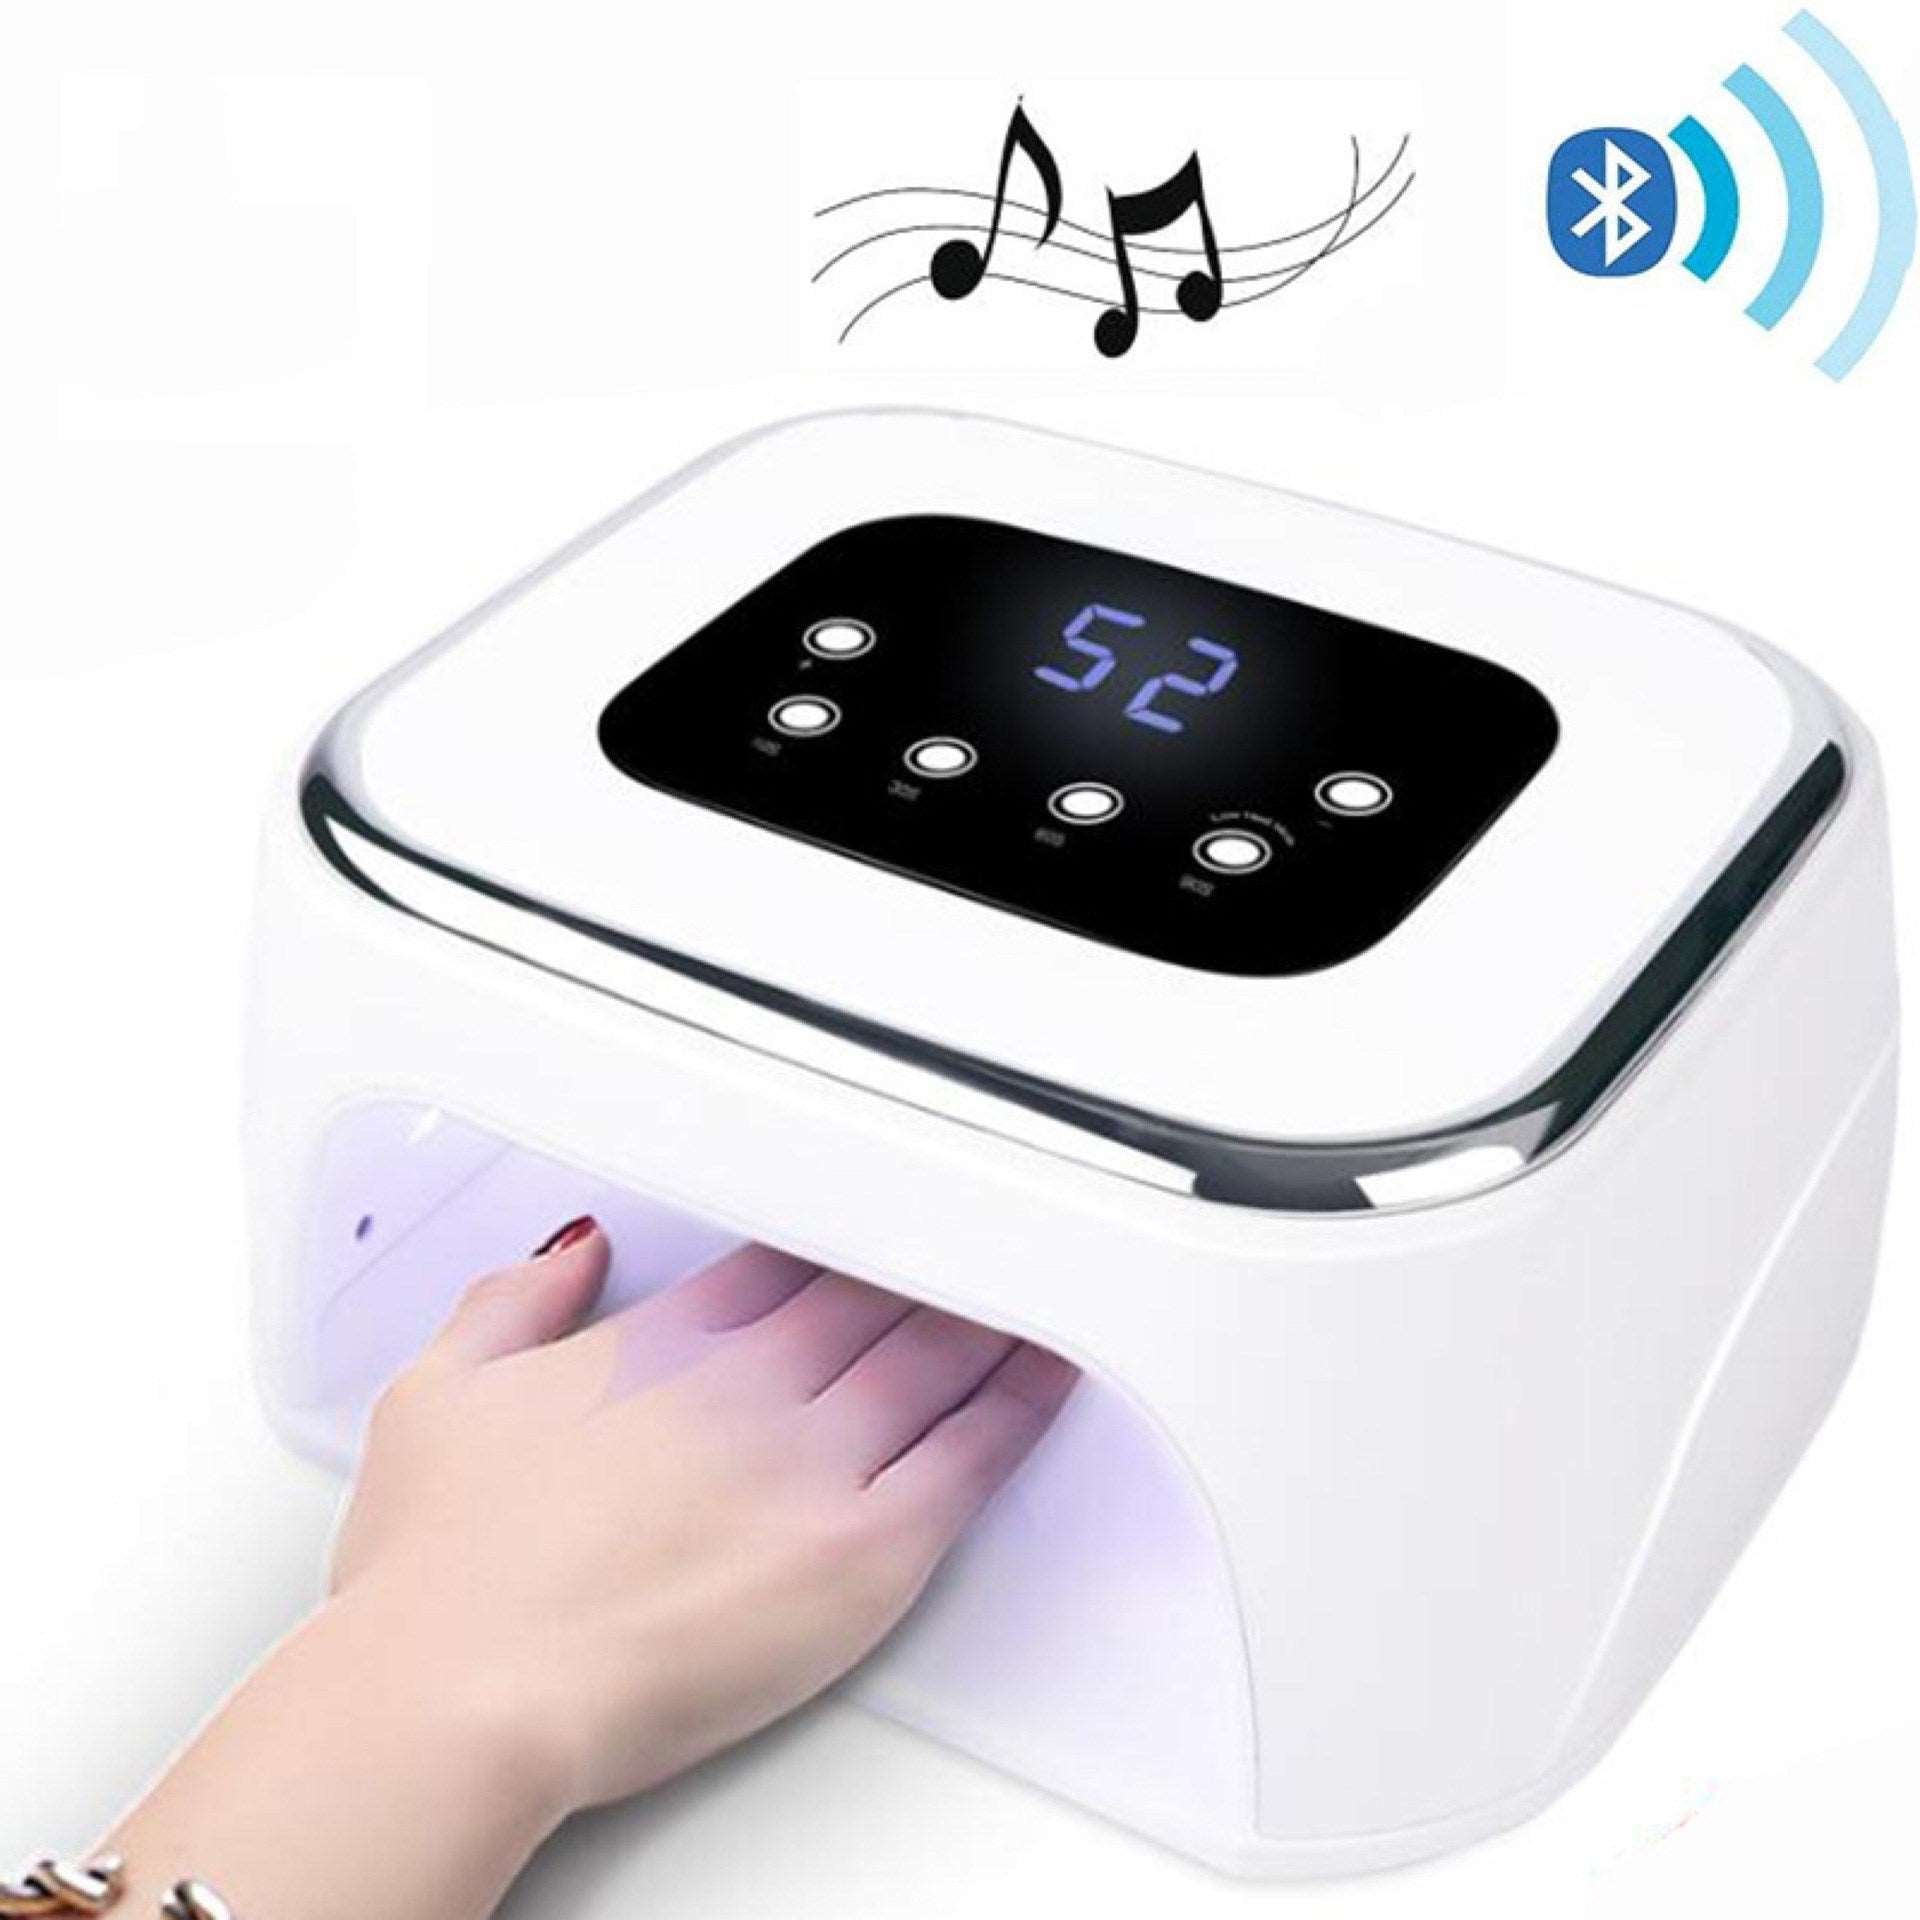 Bluetooth music nail phototherapy machine